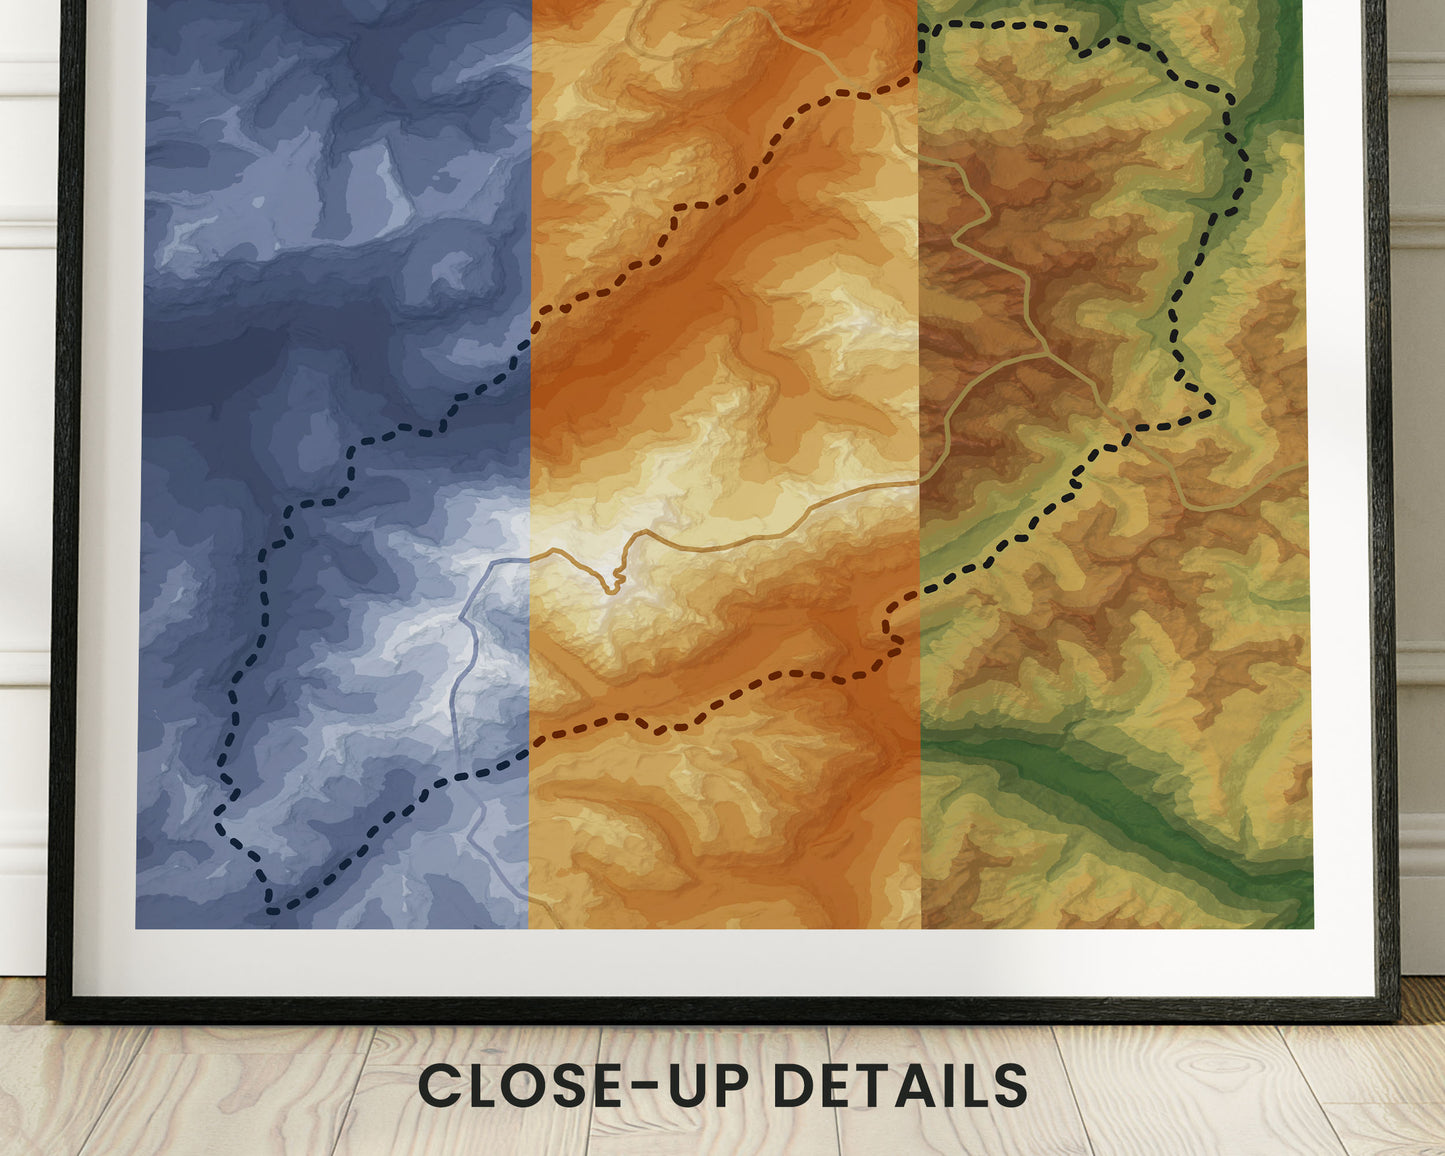 Tour Du Mont Blanc (TMB) Topographic Map Poster